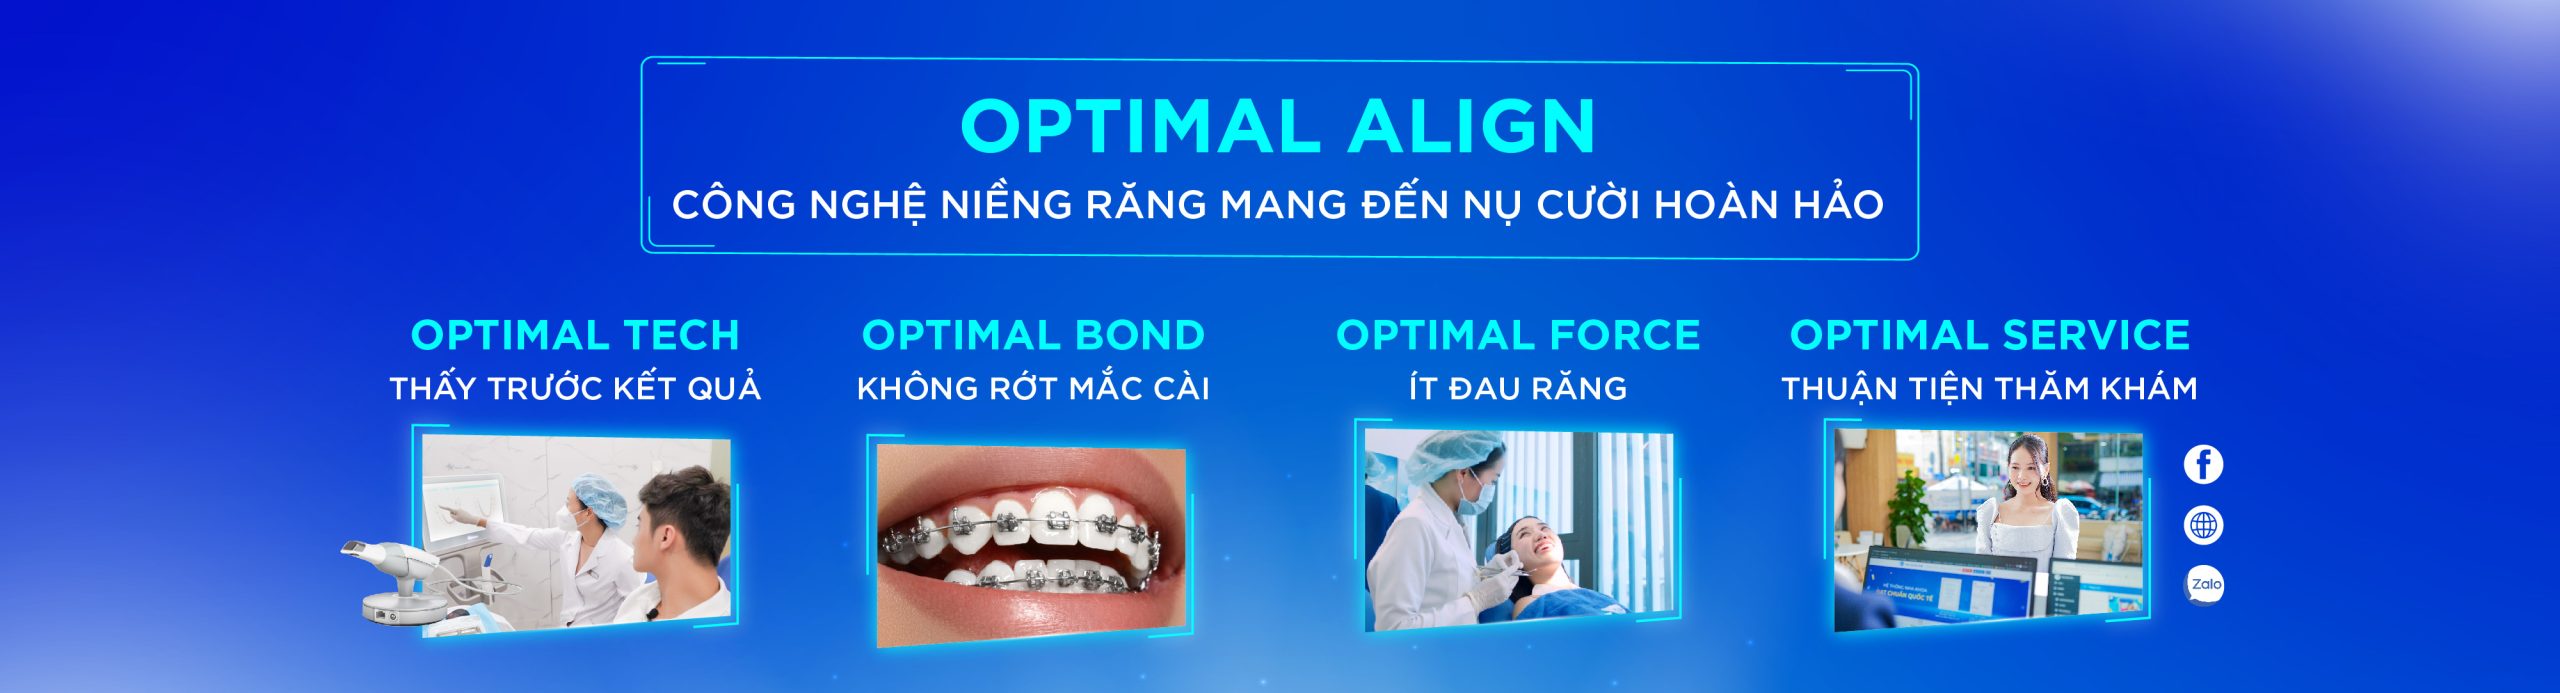 [Top Banner Desktop] Có nên niềng răng không? Tìm hiểu lợi ích, tác hại khi niềng răng